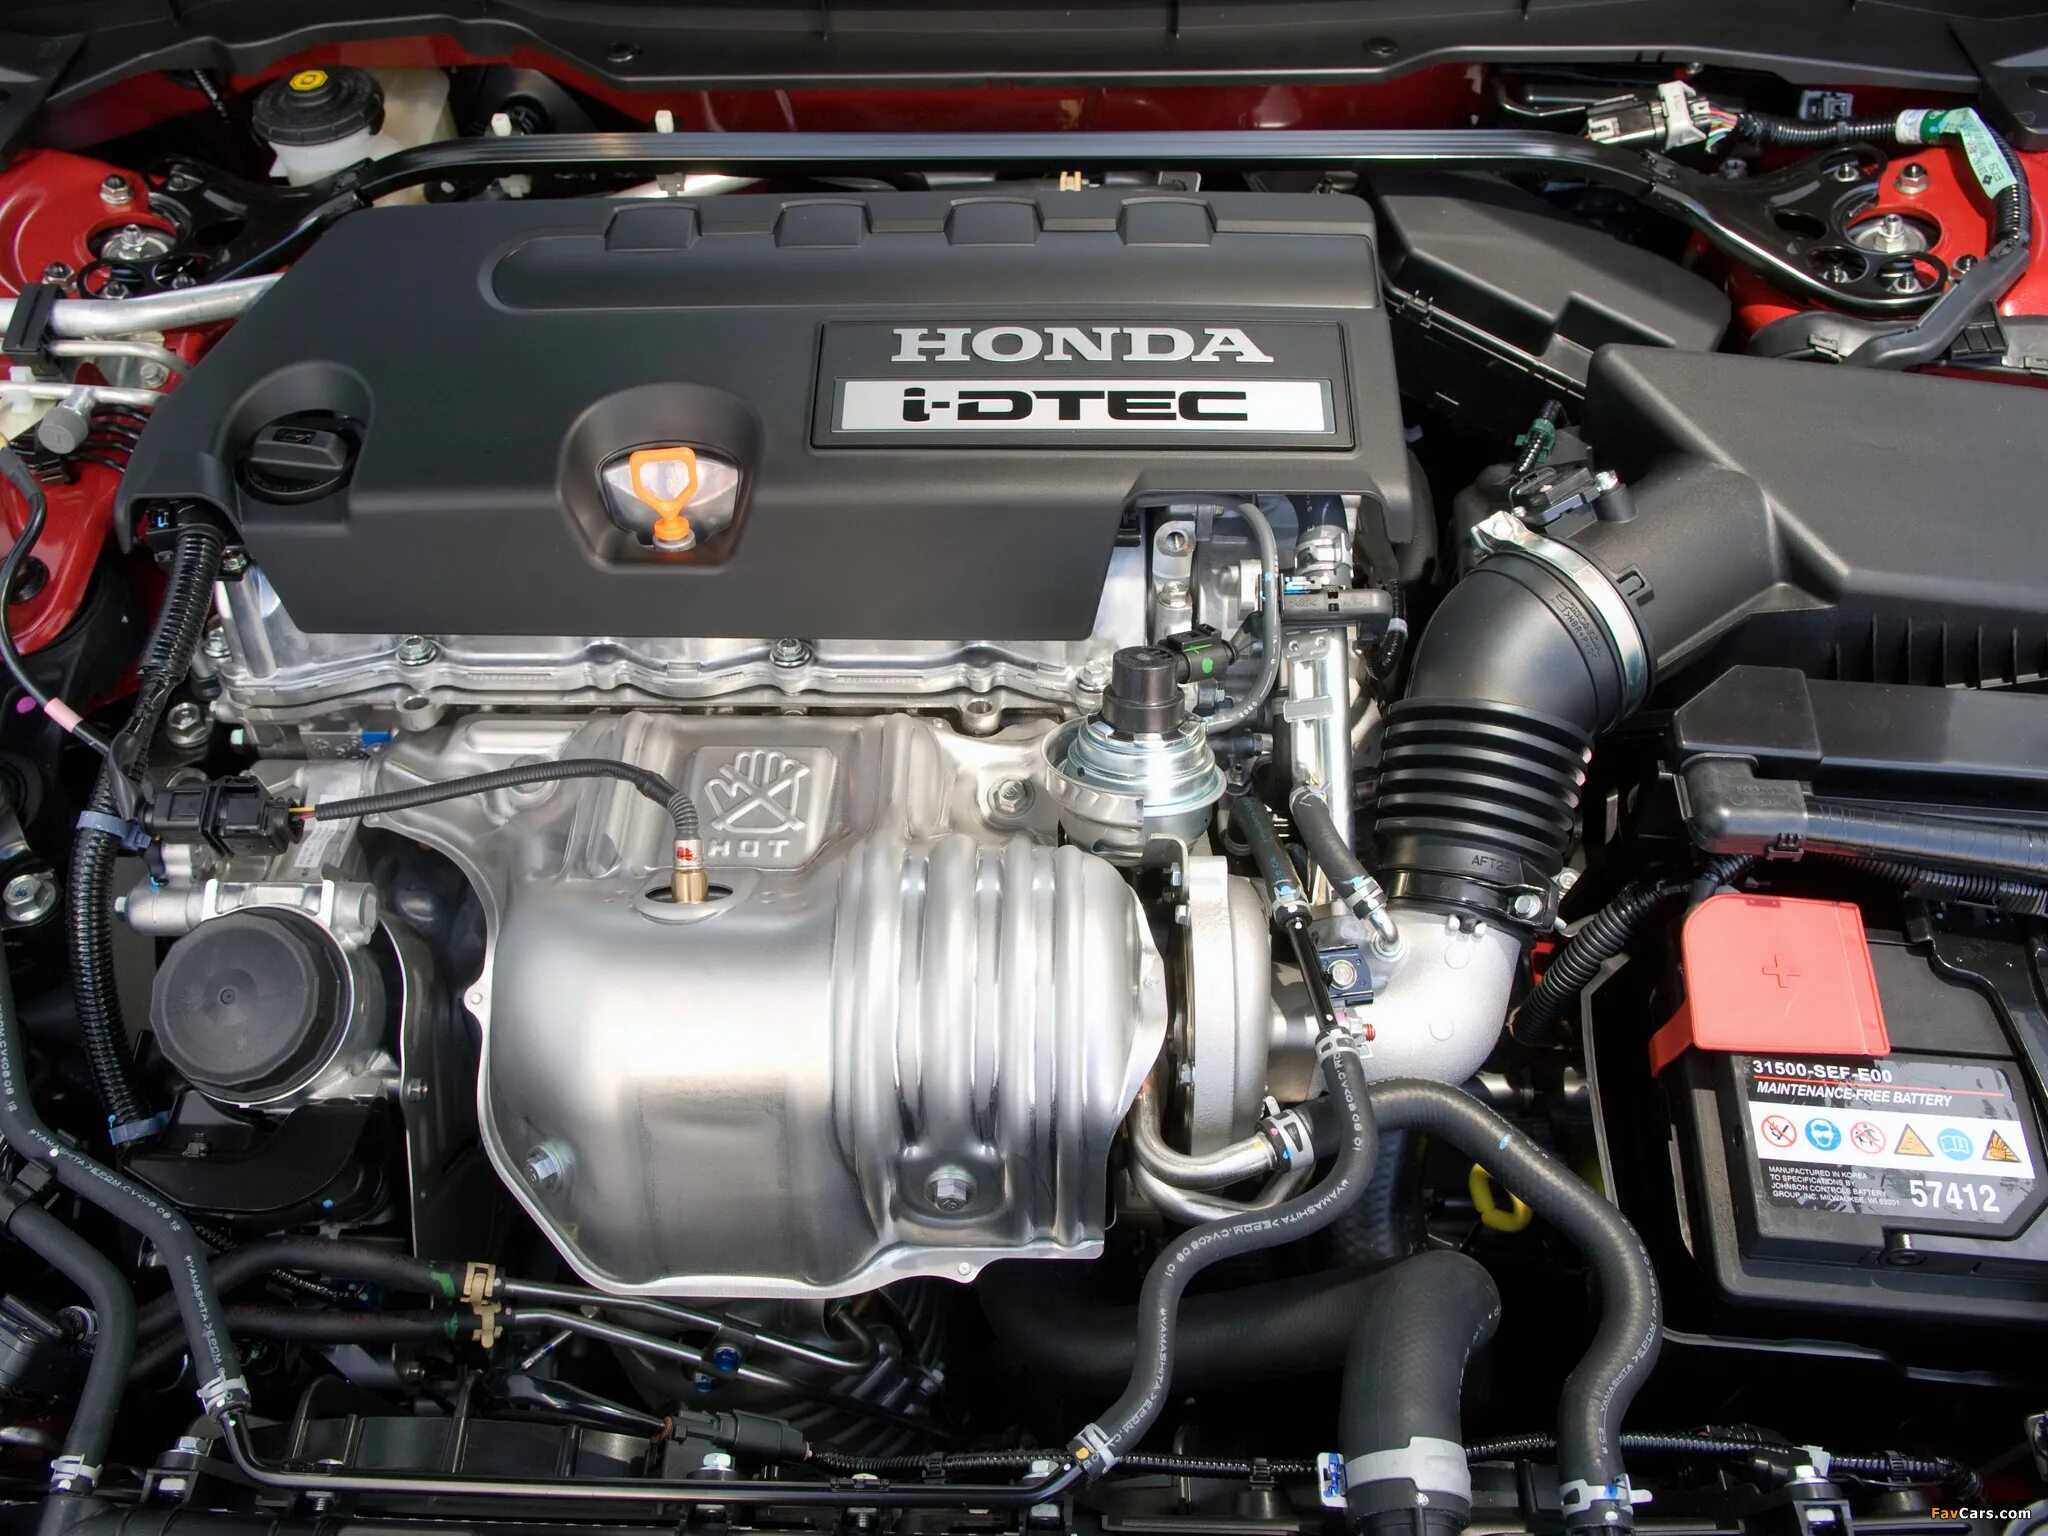 Купить хонду дизель. Хонда дизель 2.2 i-DTEC. Honda CR V 2.2 dizel Motor. Honda Accord Diesel 2.2. Двигатель Хонда Цивик 2.4.